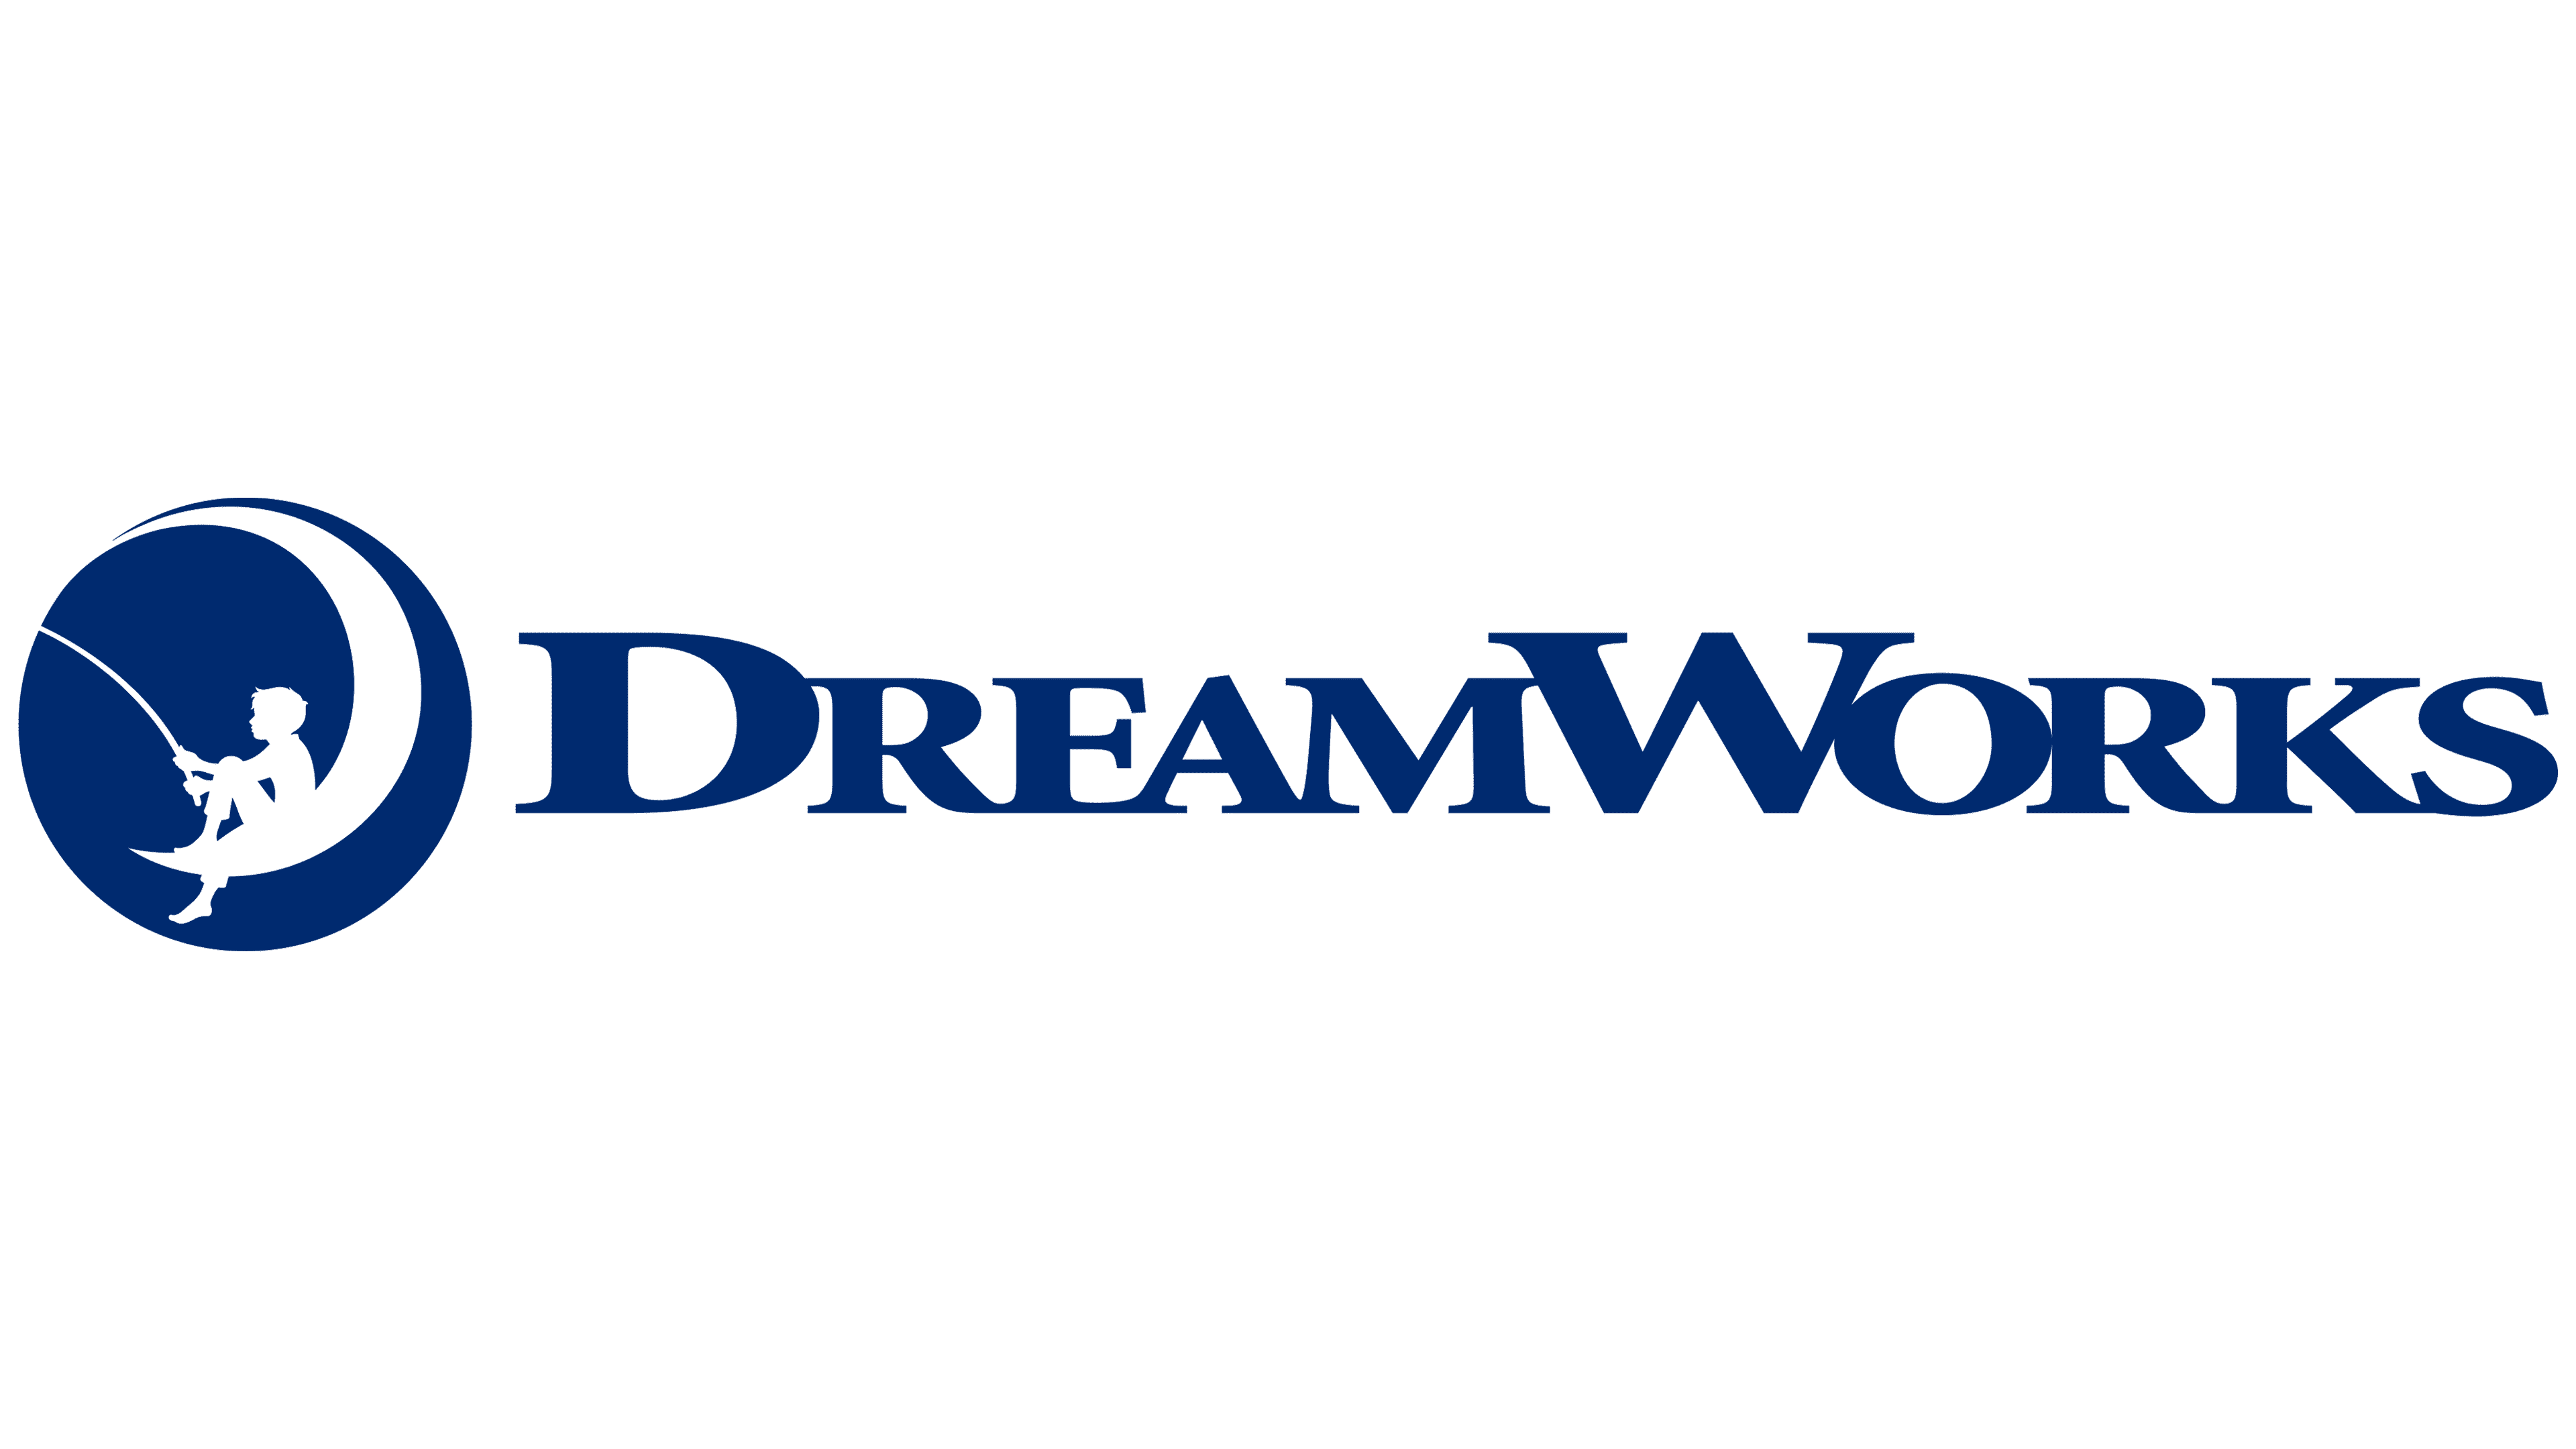 Dreamworks Logo PNG Image